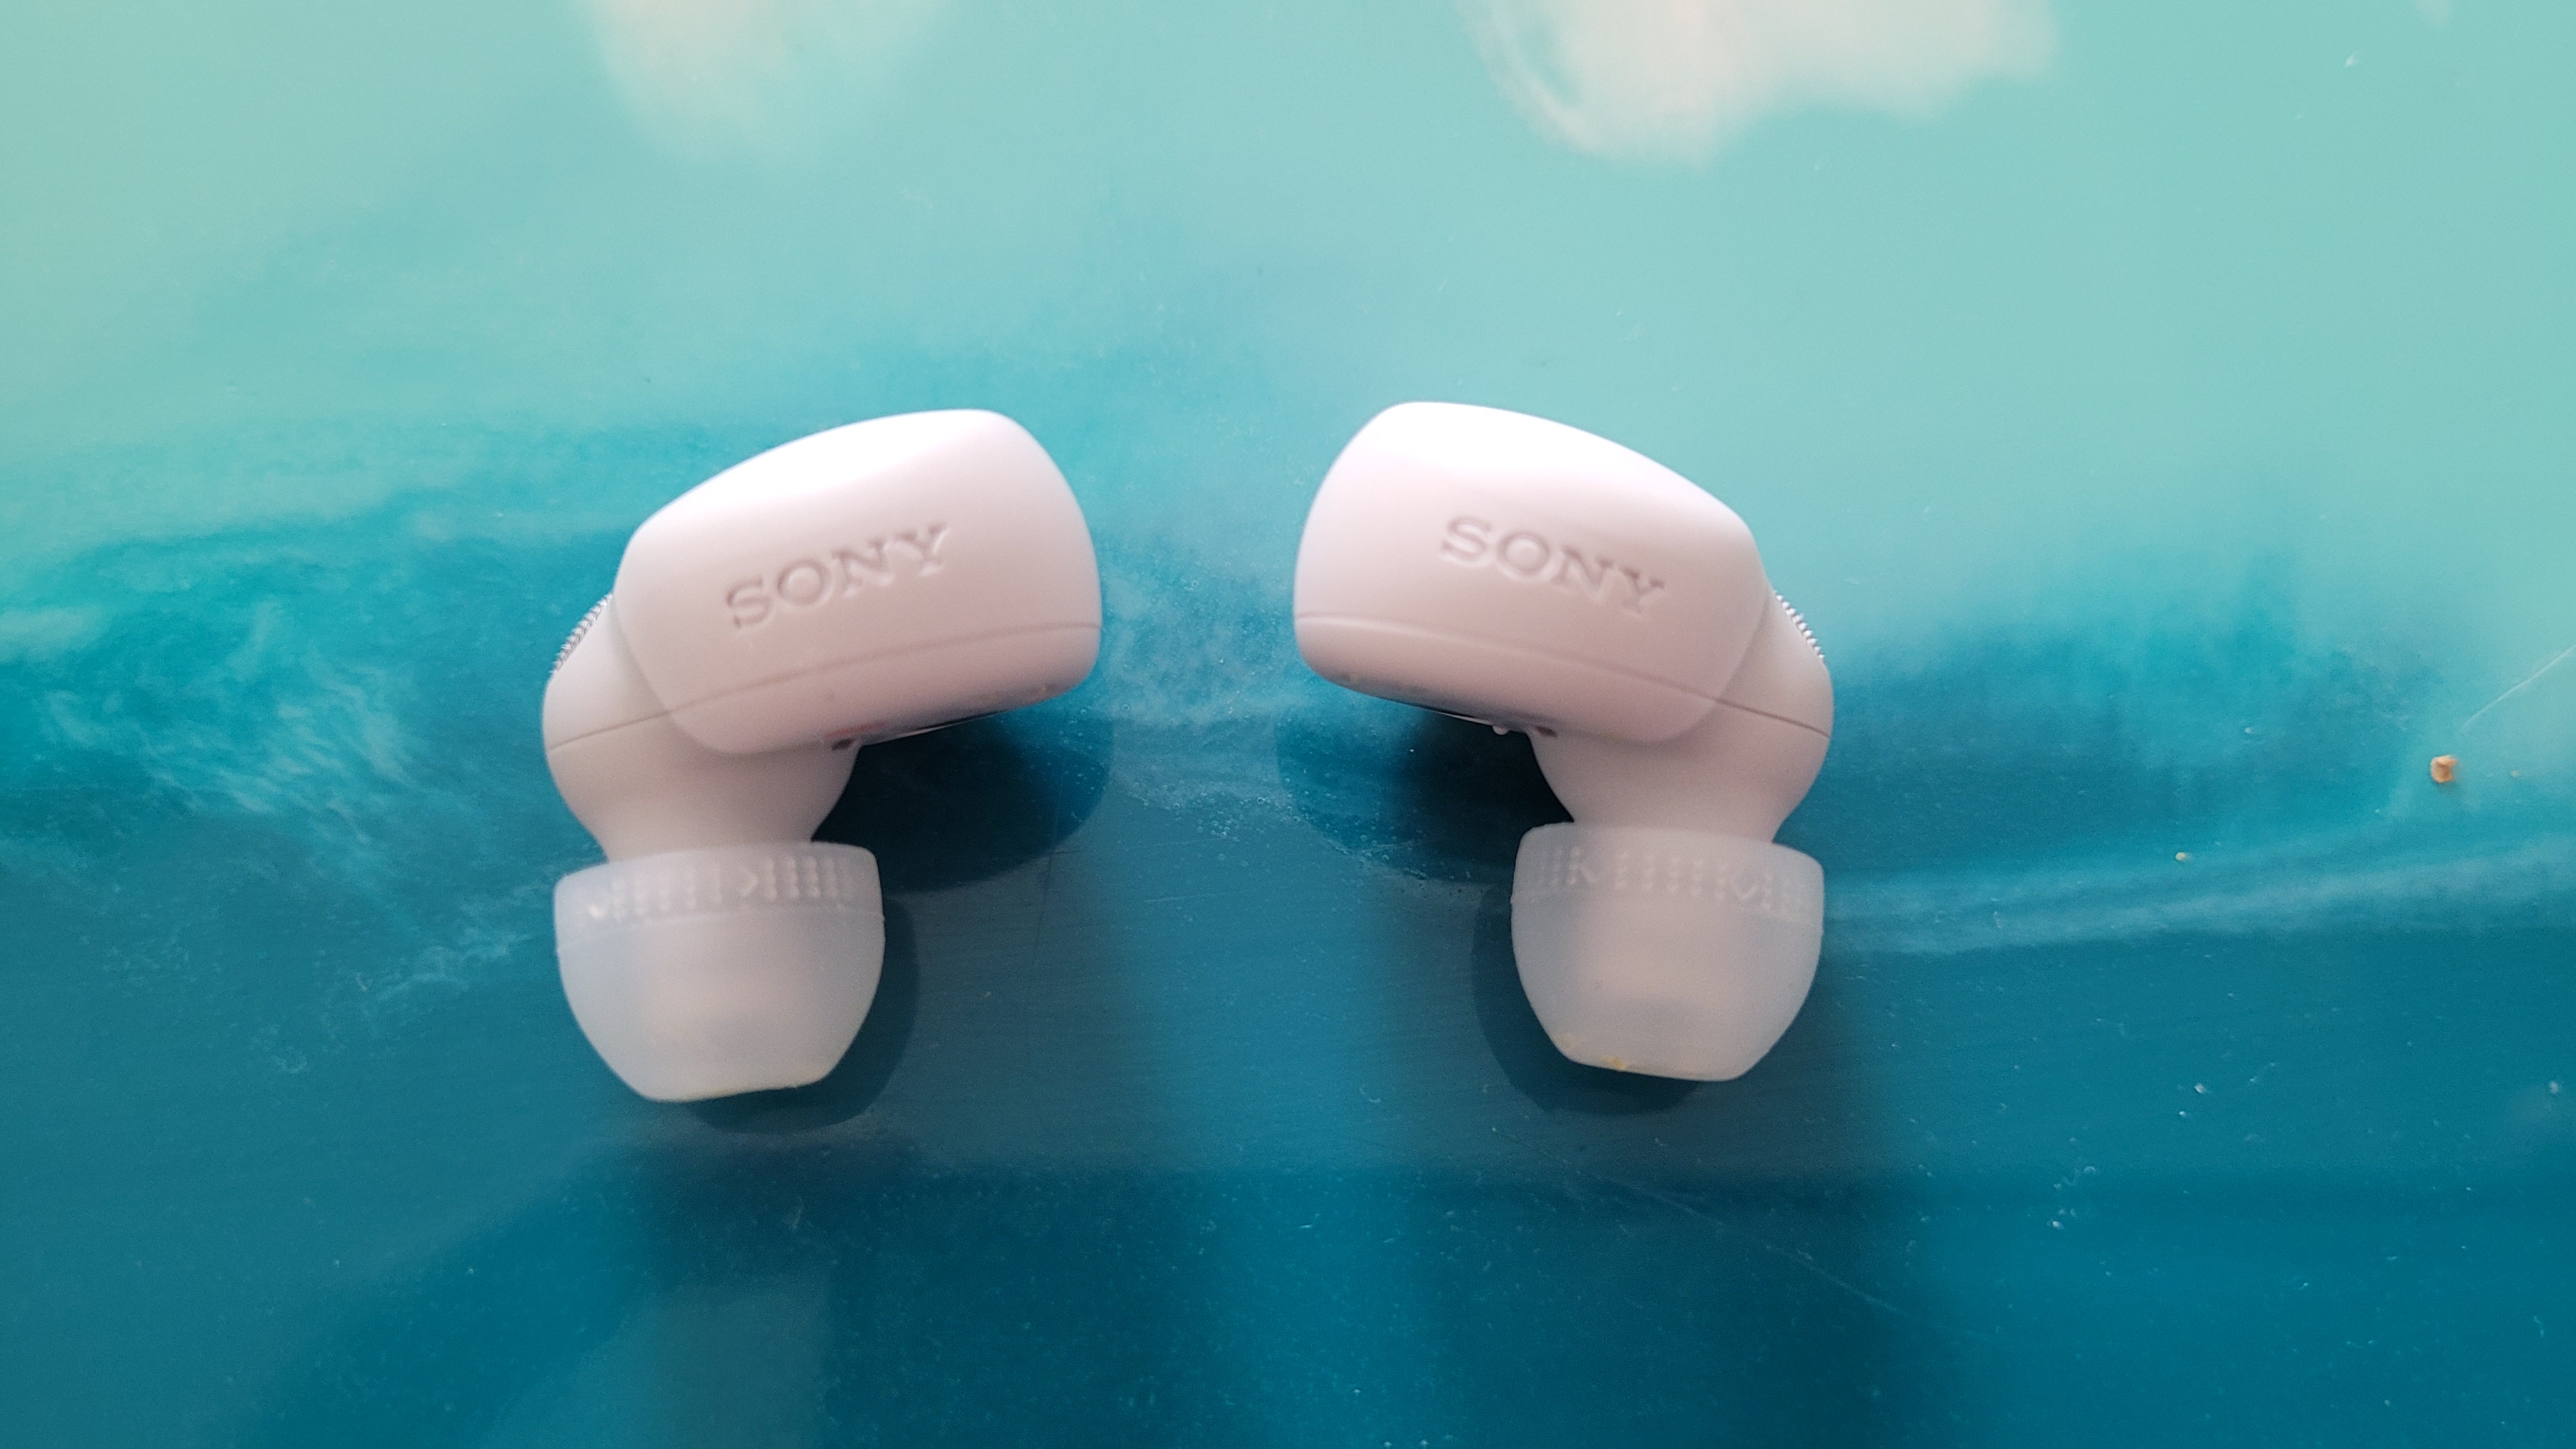 Sony LinkBuds S wireless earbuds